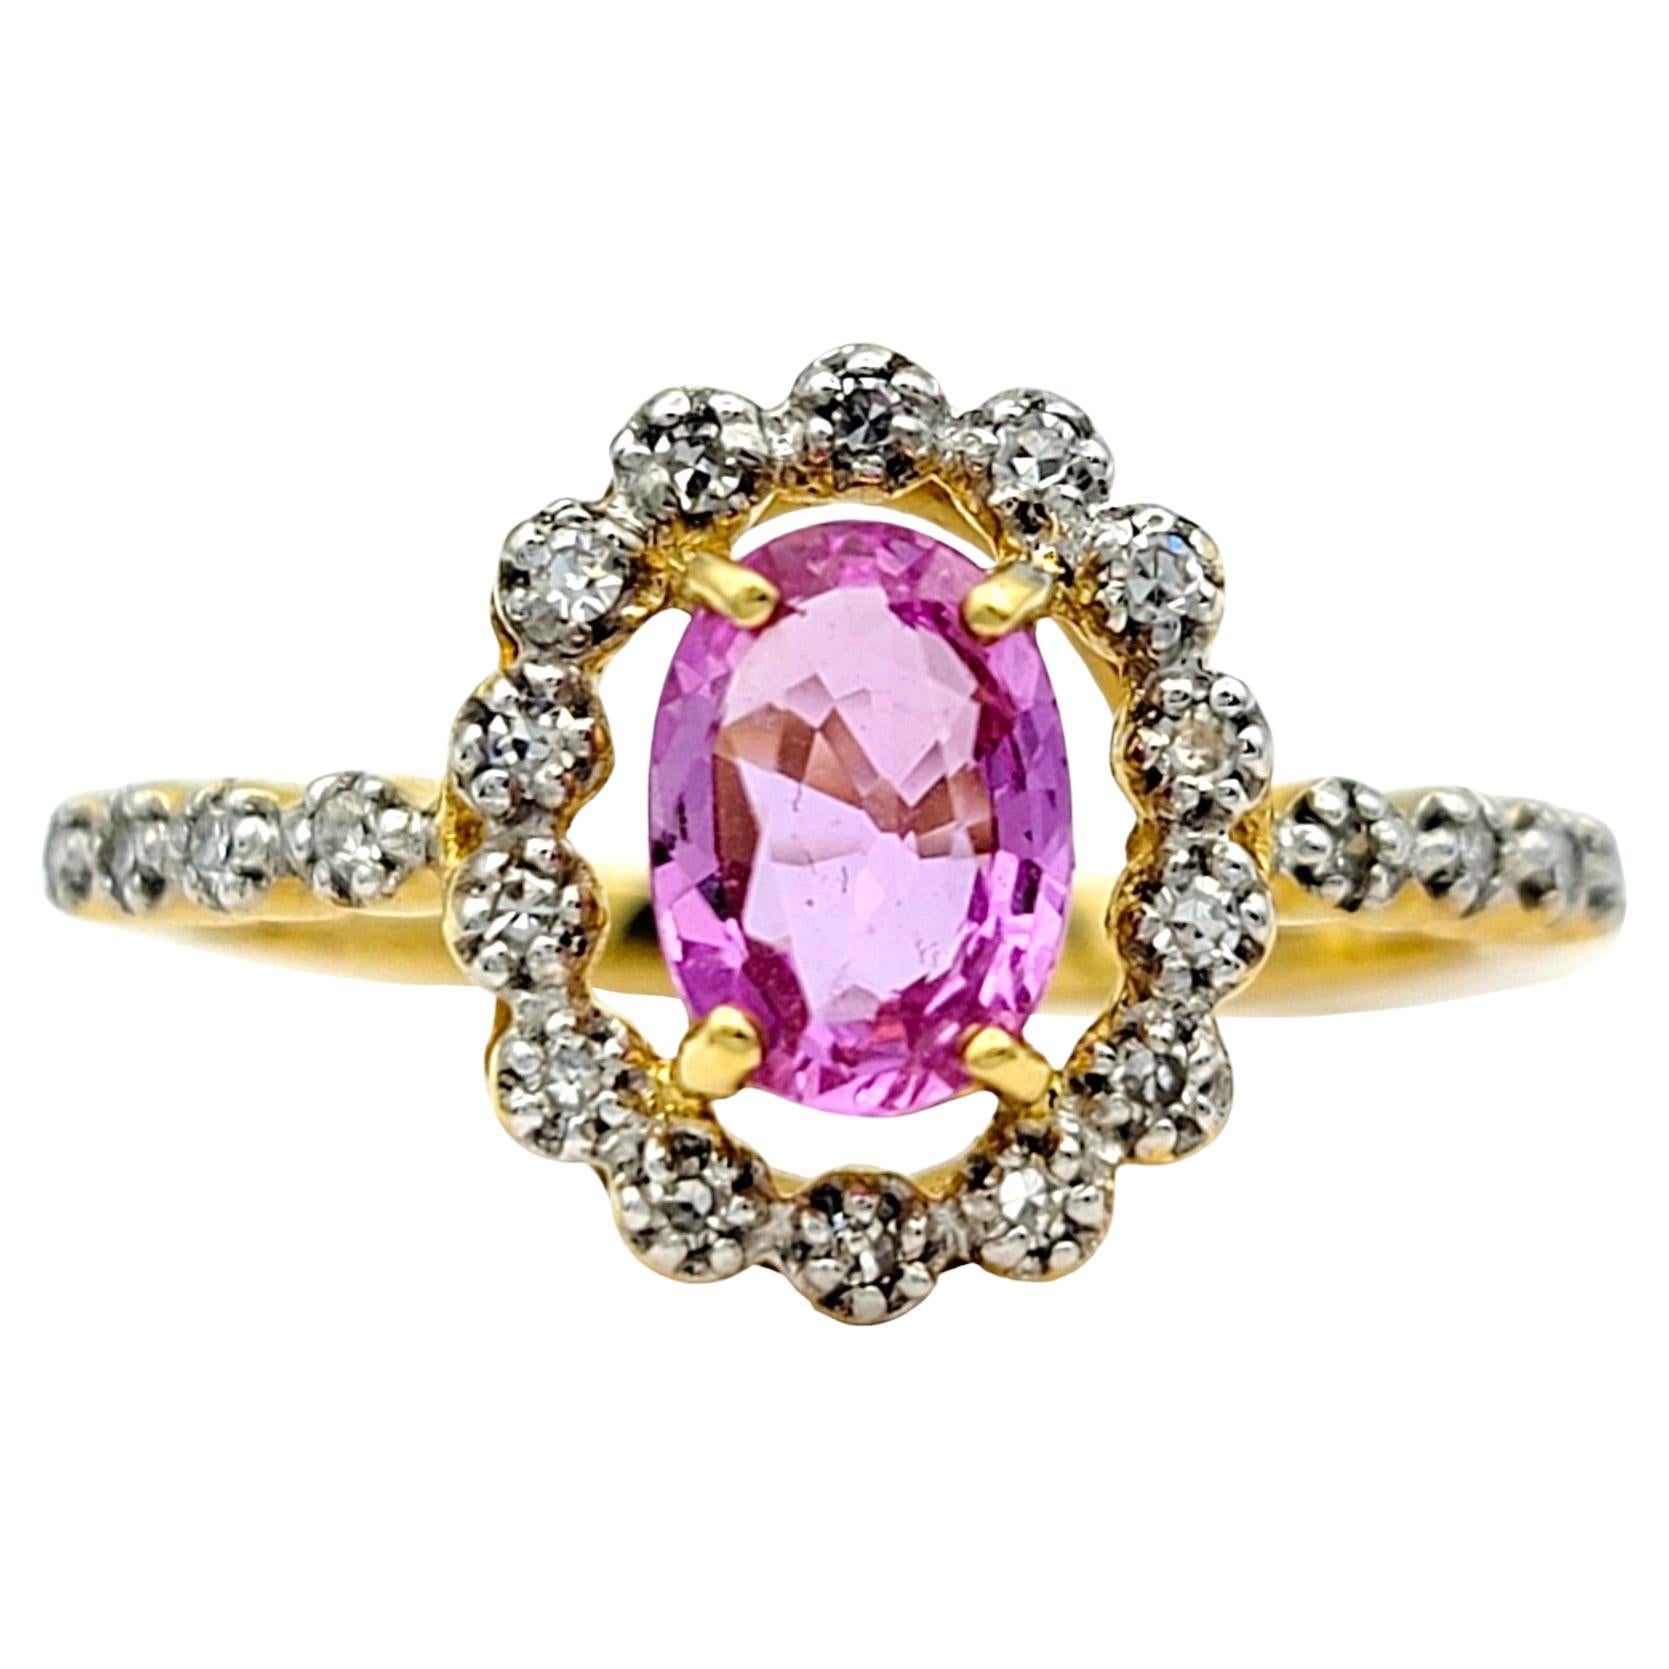 Ringgröße: 7

Im Mittelpunkt dieses exquisiten Rings steht ein bezaubernder ovaler rosa Saphir, eingebettet in einen schimmernden Halo aus funkelnden Diamanten. Der sanfte Farbton des Saphirs kontrastiert wunderschön mit der Wärme der Fassung aus 18